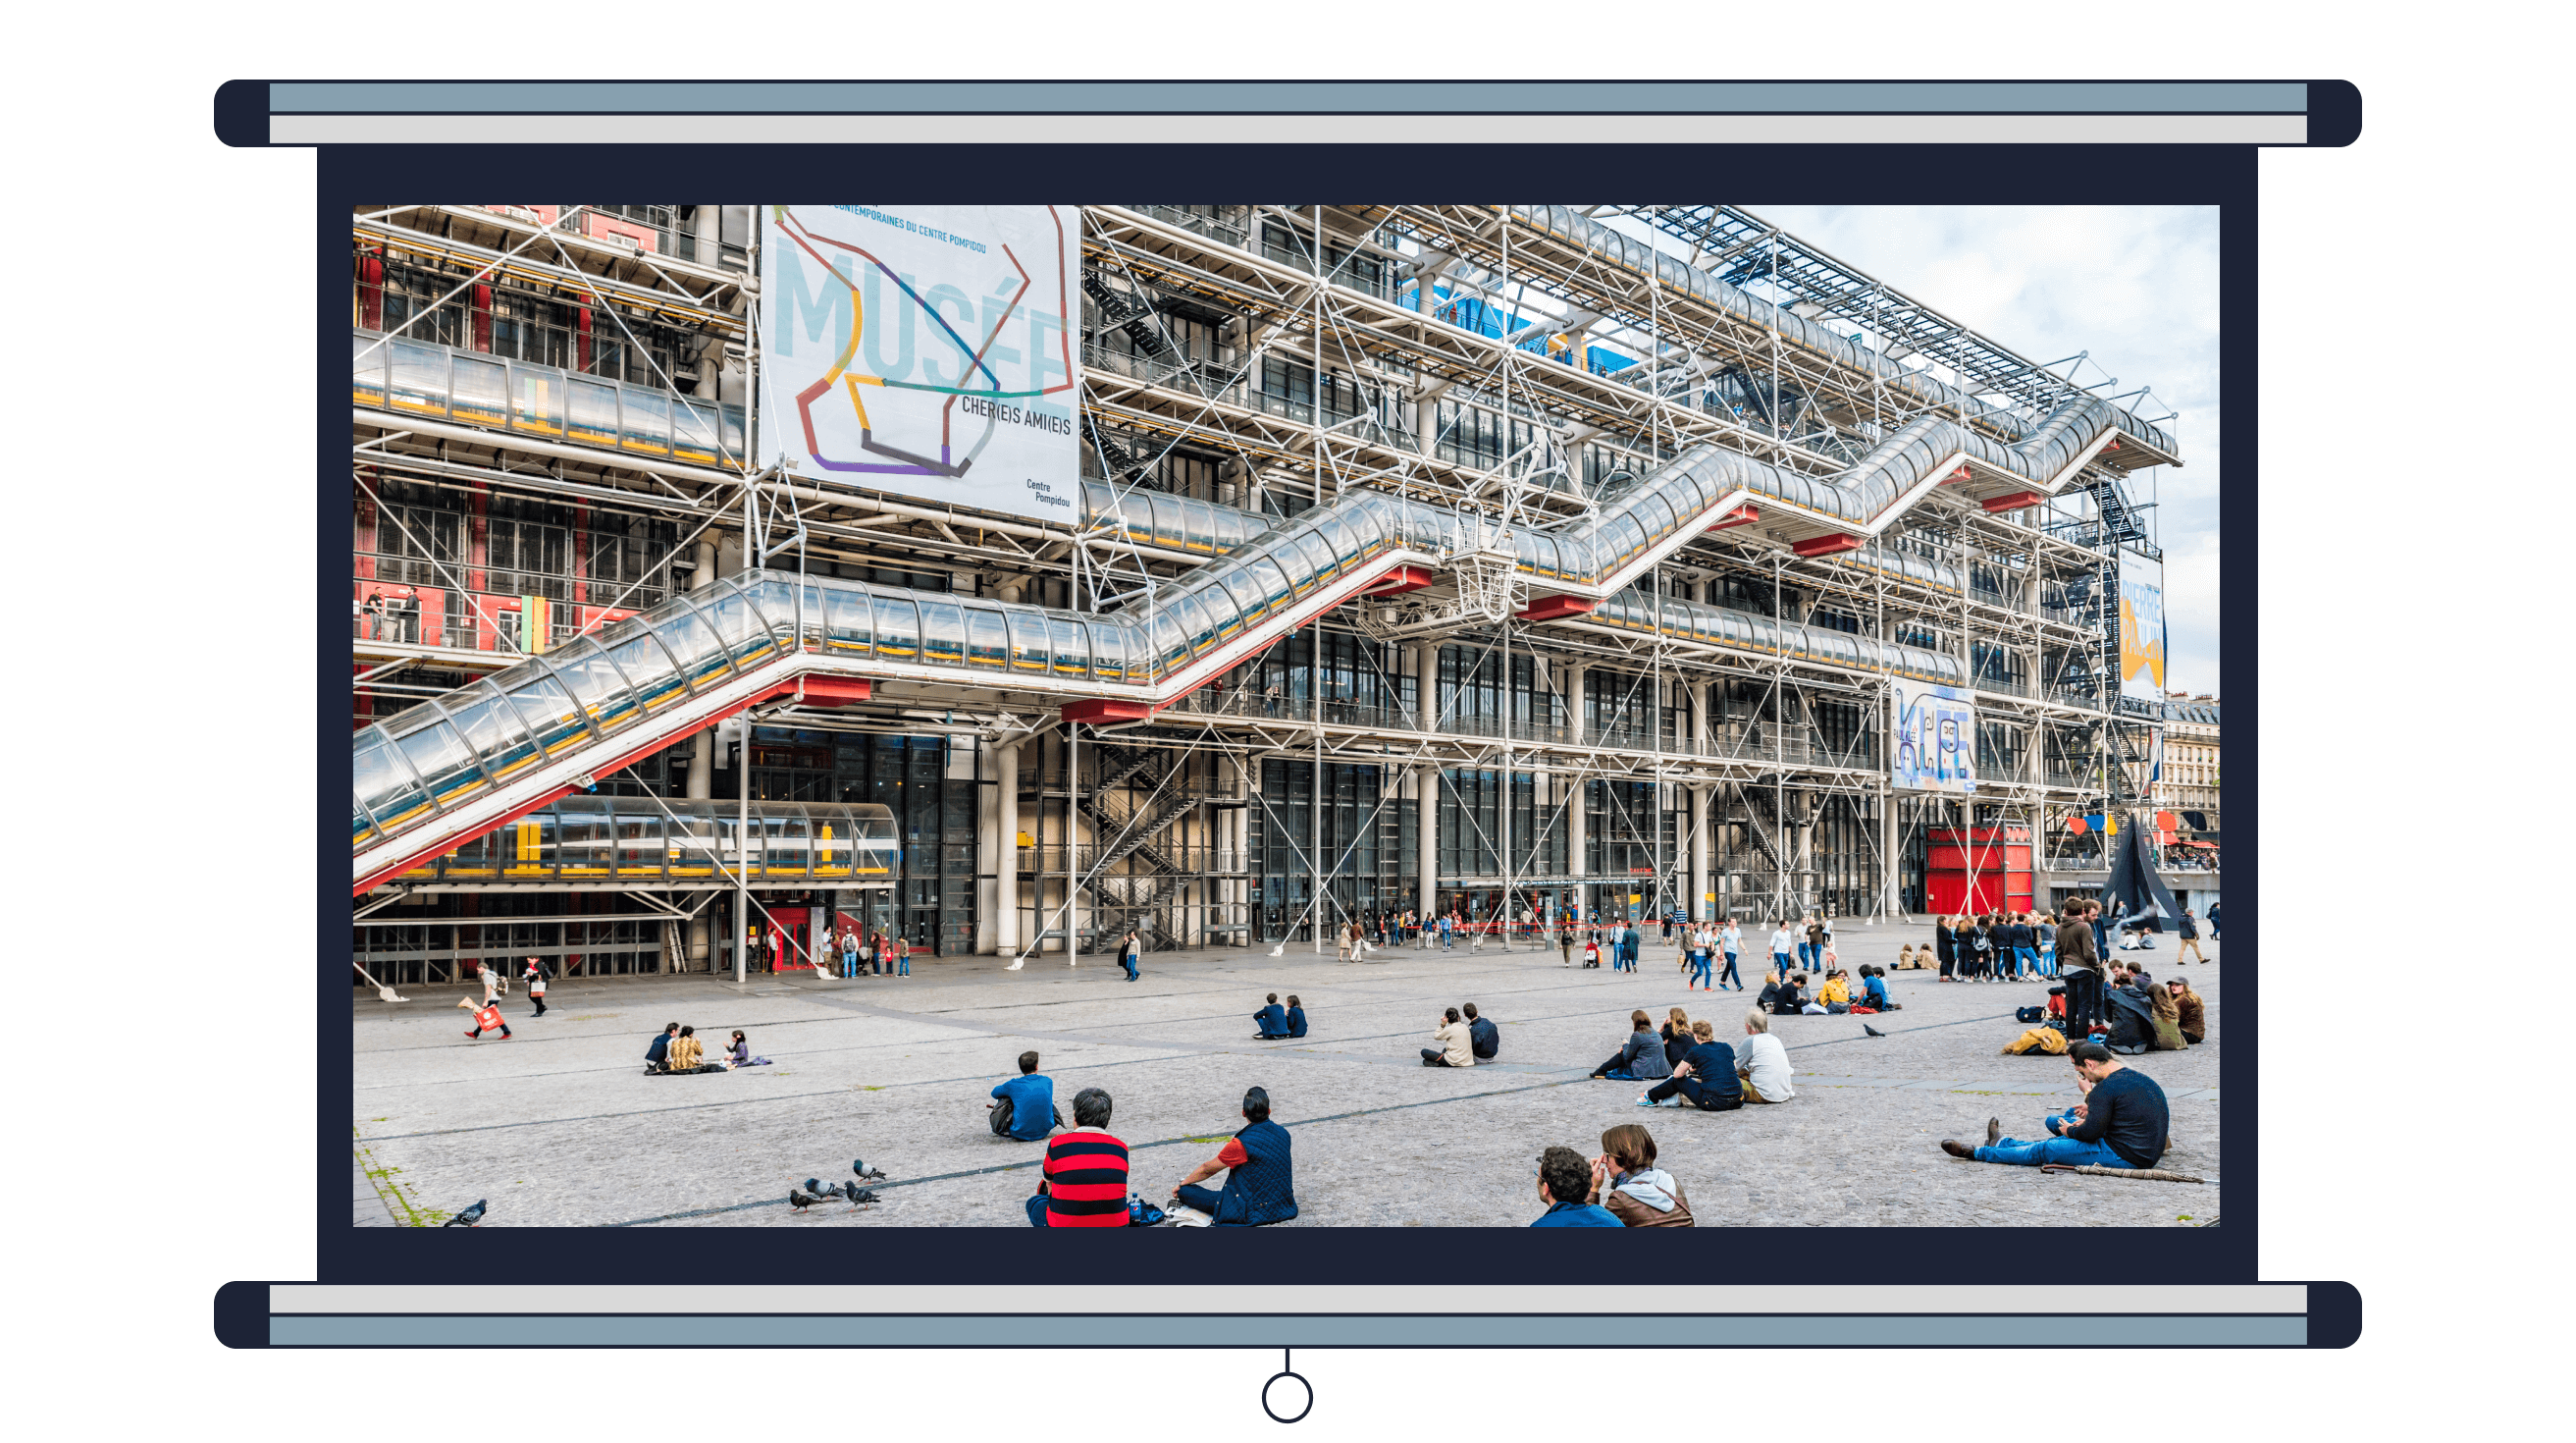 Примеры 16. Центр Помпиду в Париже, архитекторы Ричард Роджерс и Ренцо Пиано<br><br>Фото: Takashi Images / Shutterstock.com<br>